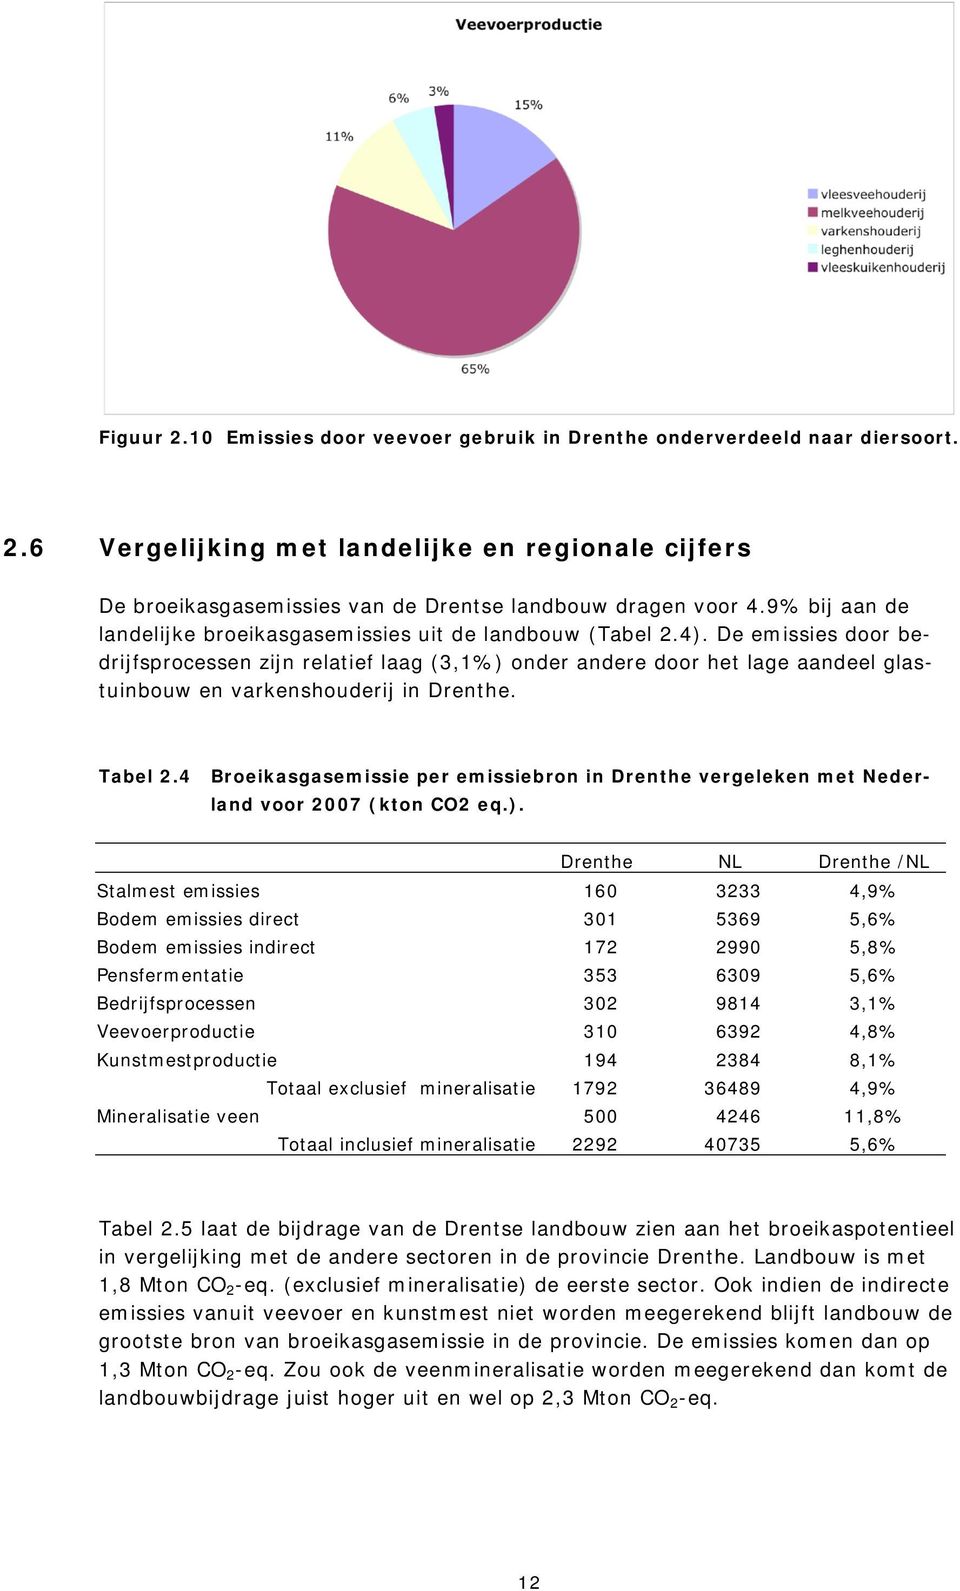 De emissies door bedrijfsprocessen zijn relatief laag (3,1%) onder andere door het lage aandeel glastuinbouw en varkenshouderij in Drenthe. Tabel 2.